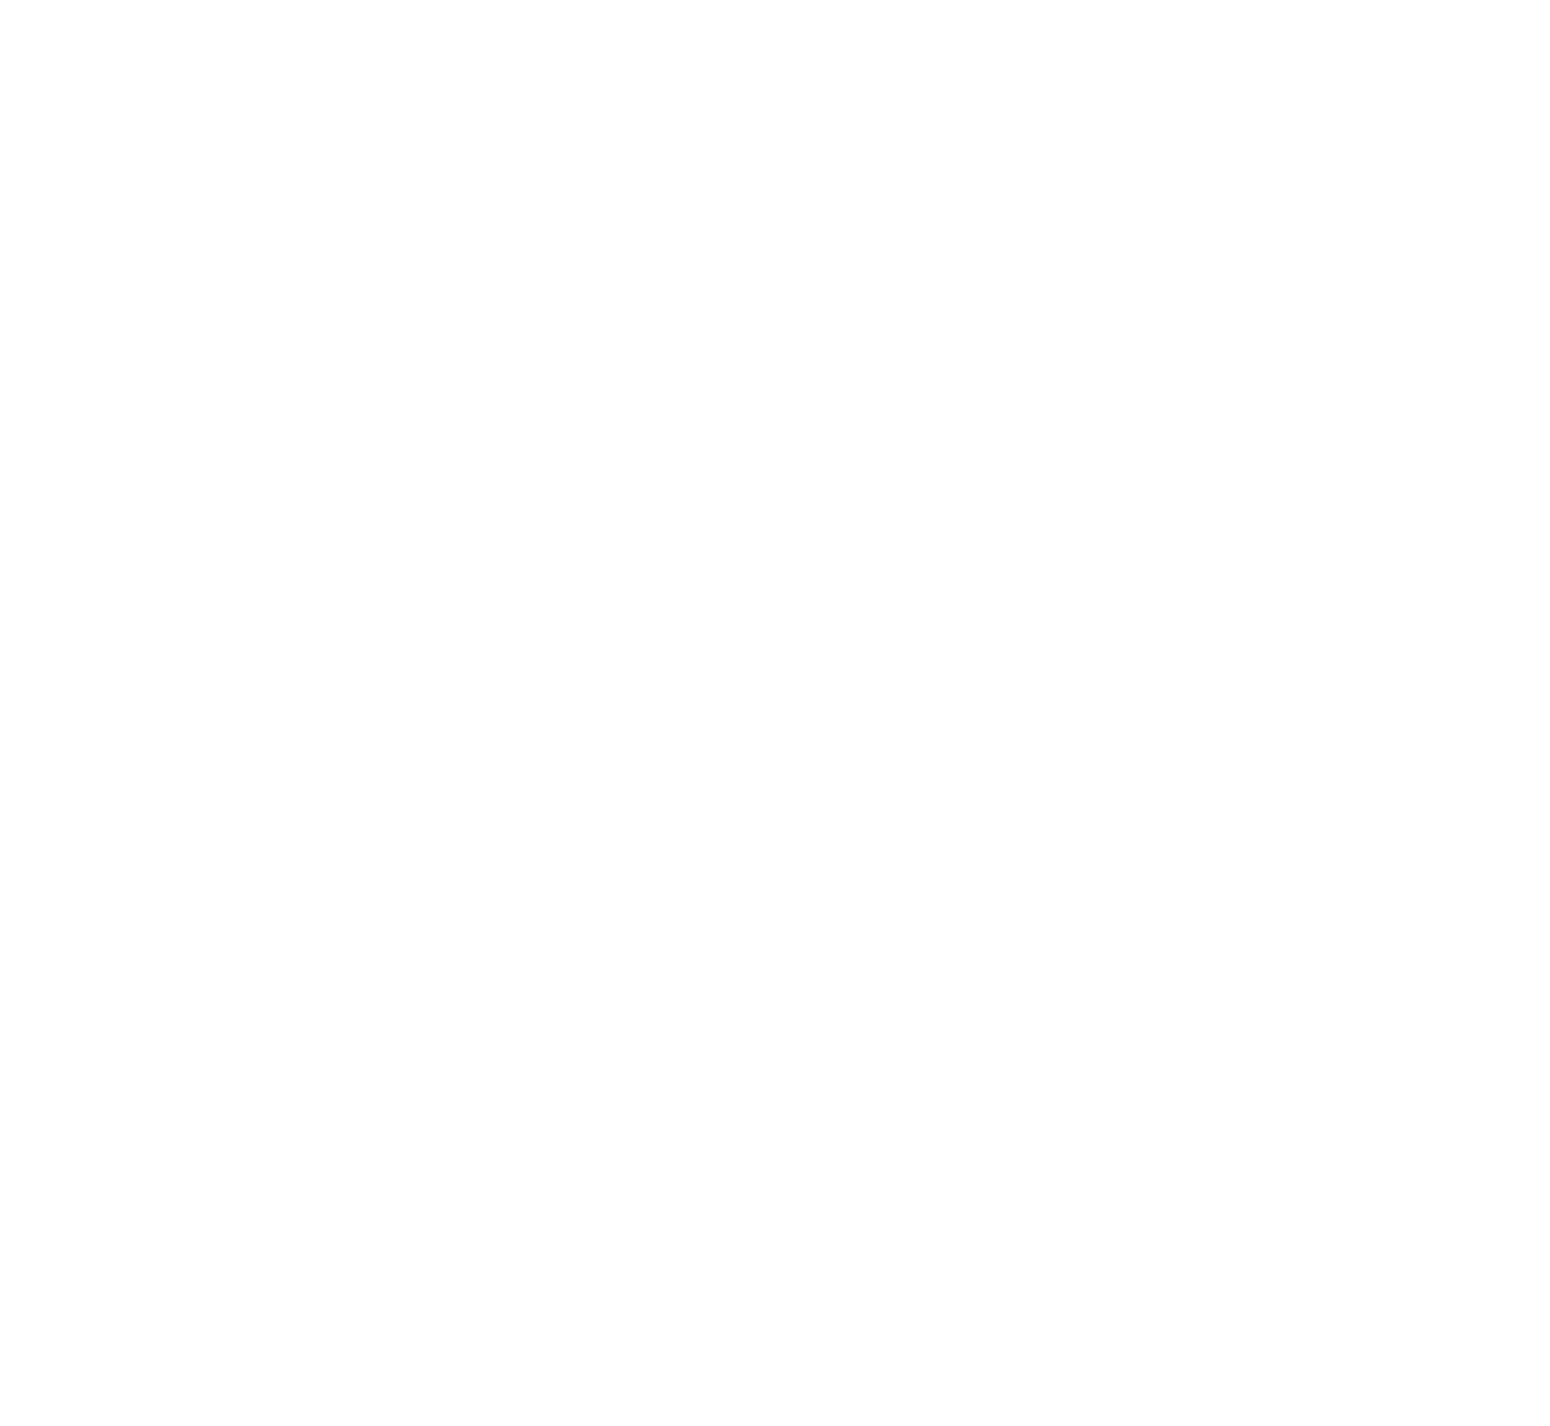 Tigo Energy logo pour fonds sombres (PNG transparent)